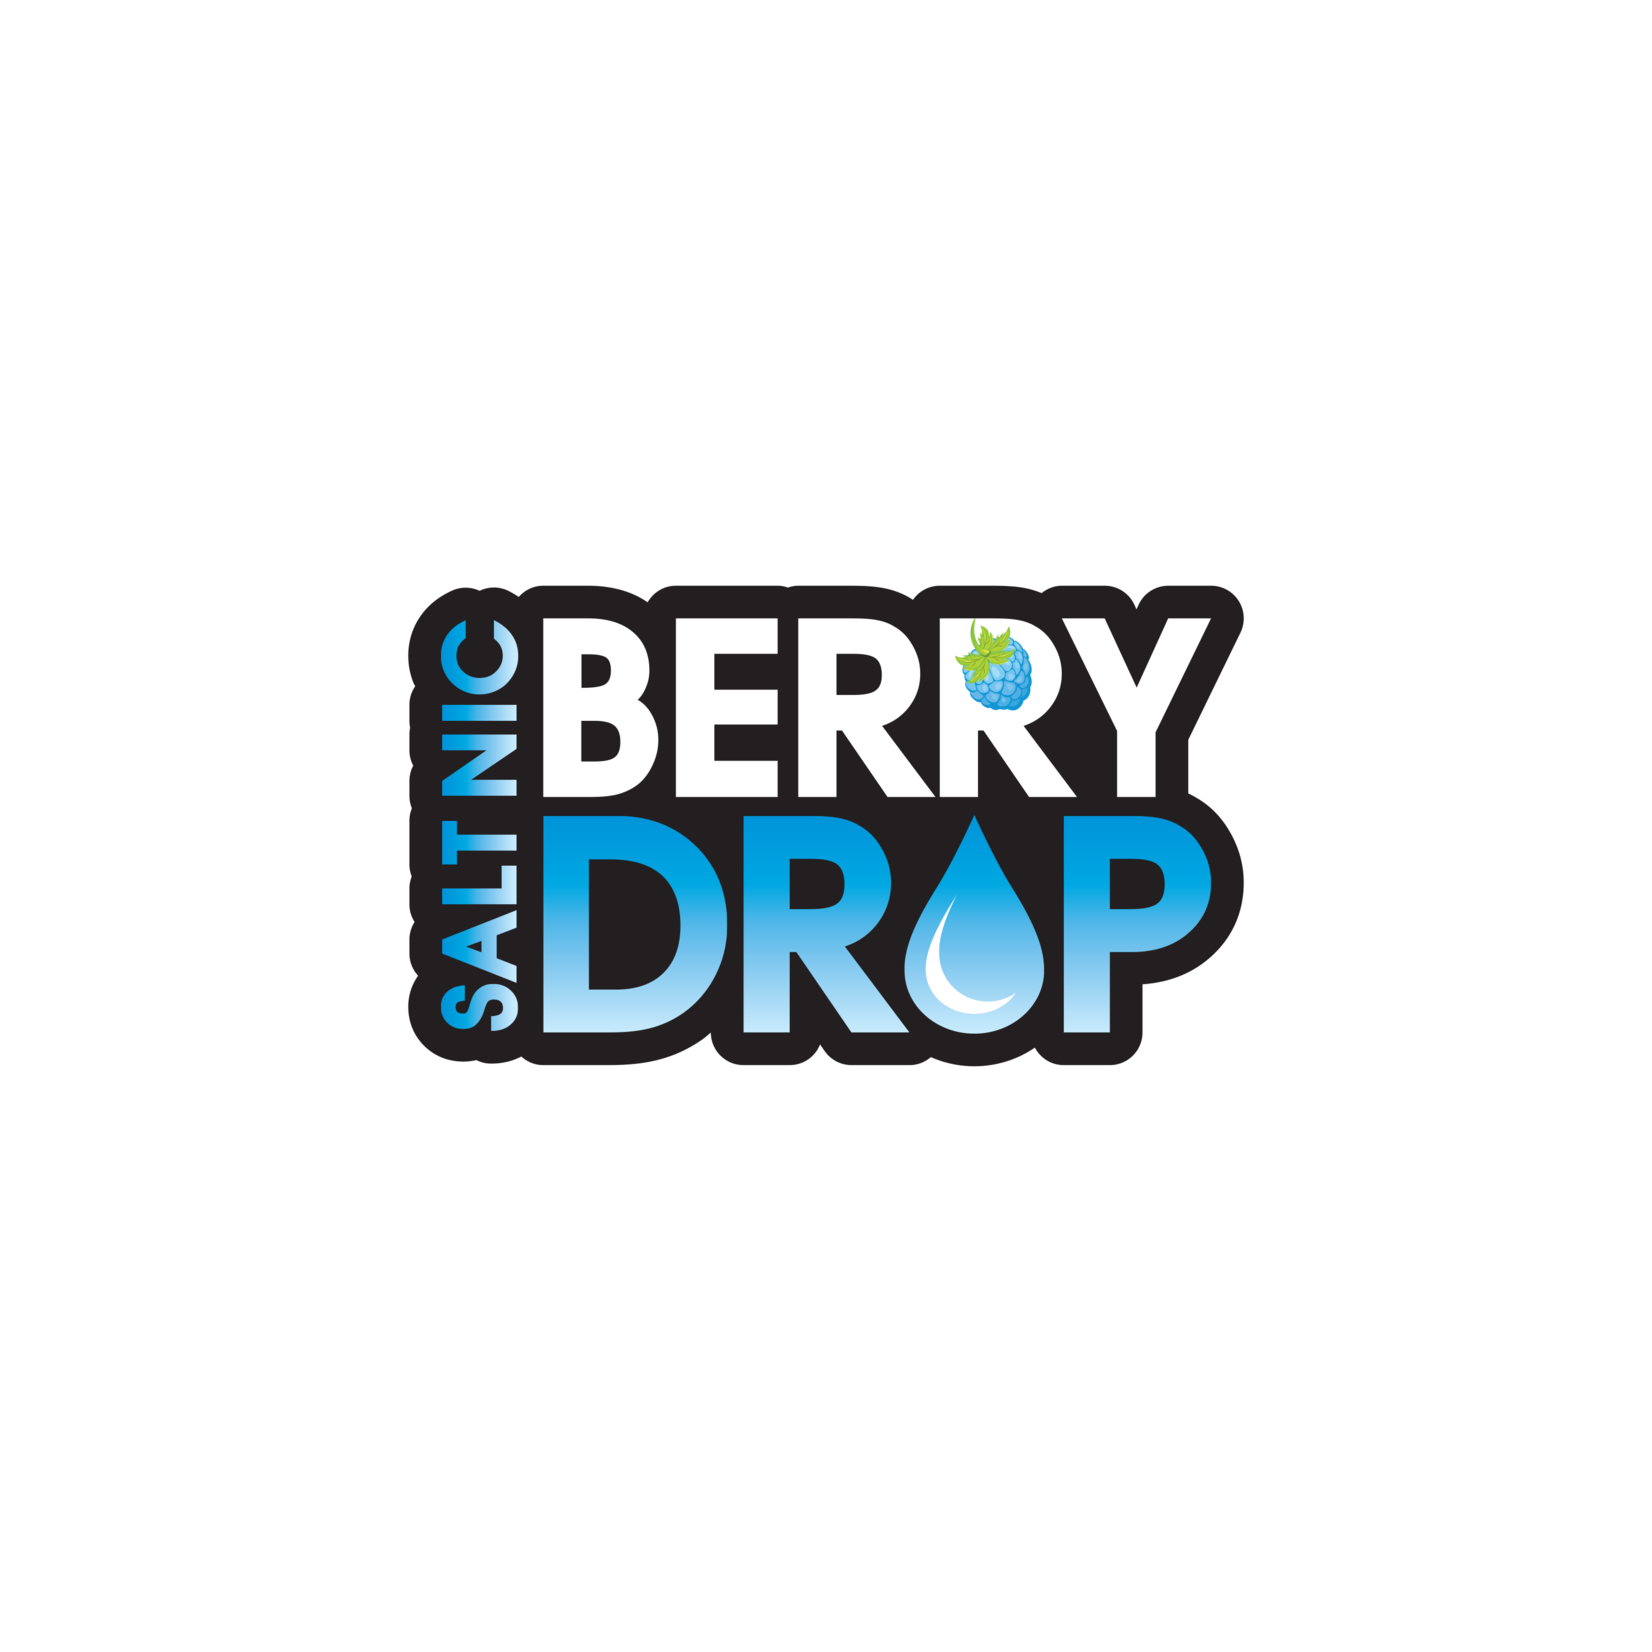 BERRY DROP Berry Drop - SALT NICOTINE